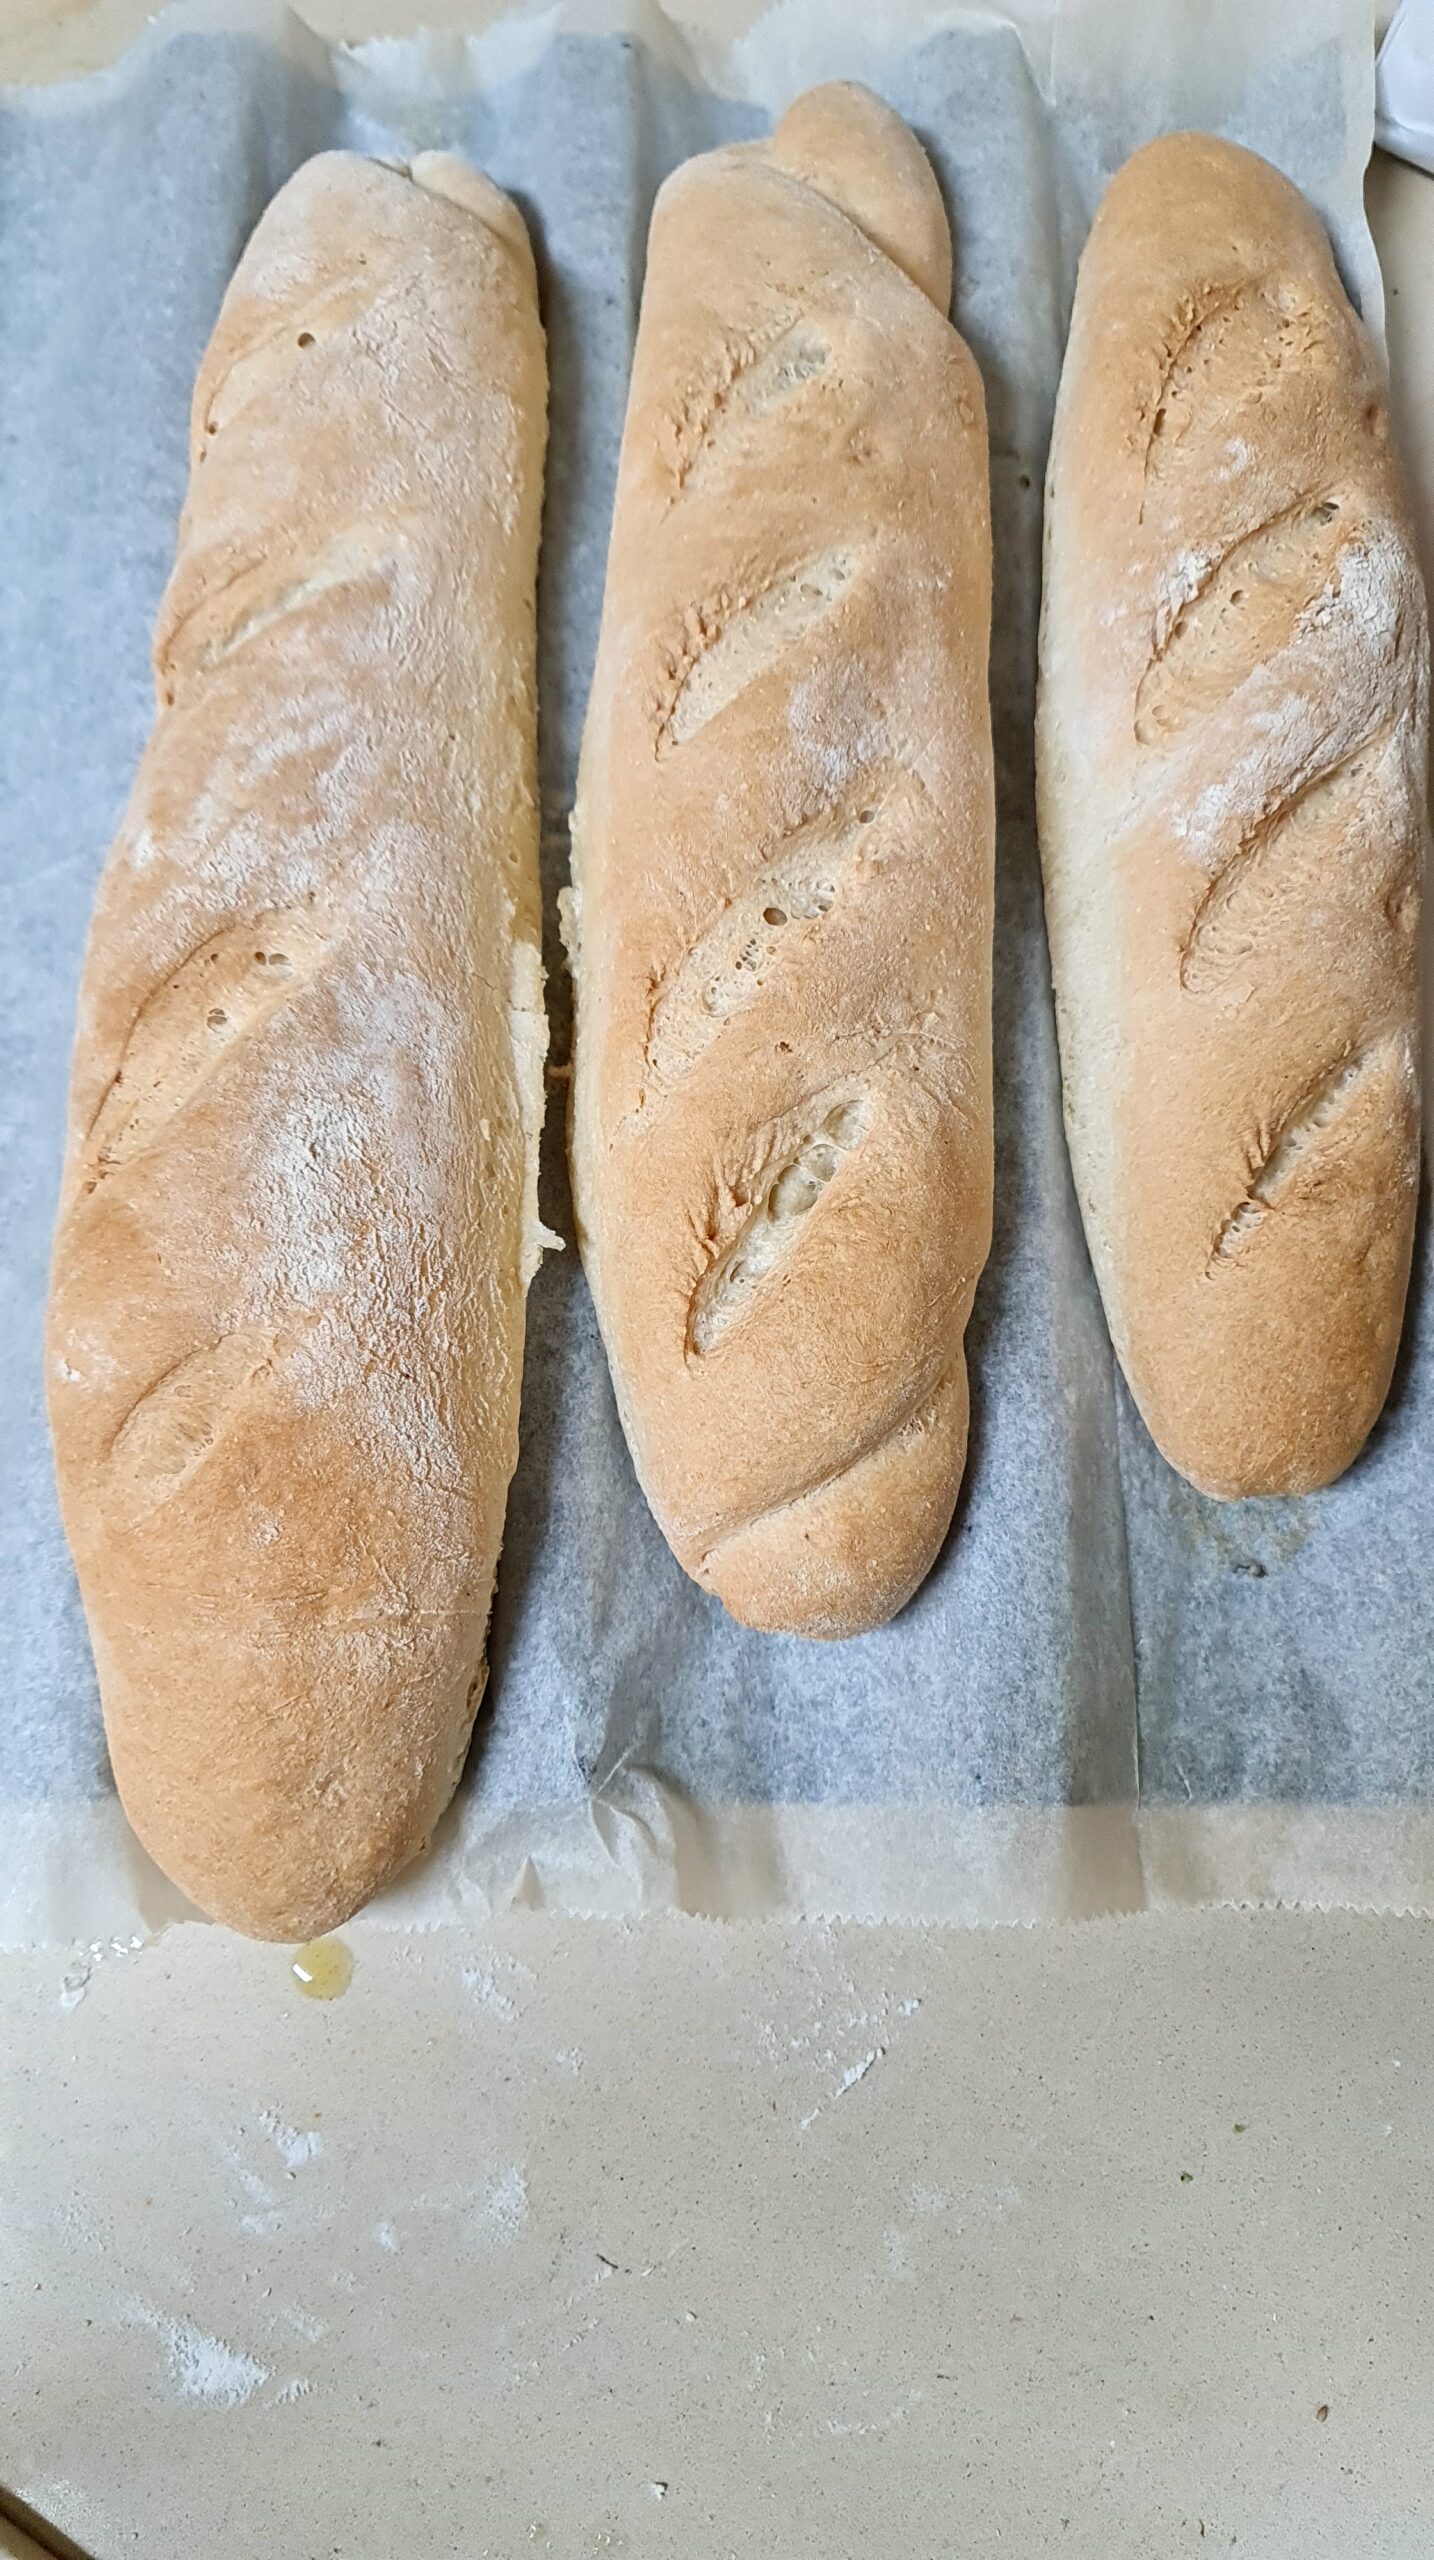 Petits pains baguettes idéal pour l'ecole !